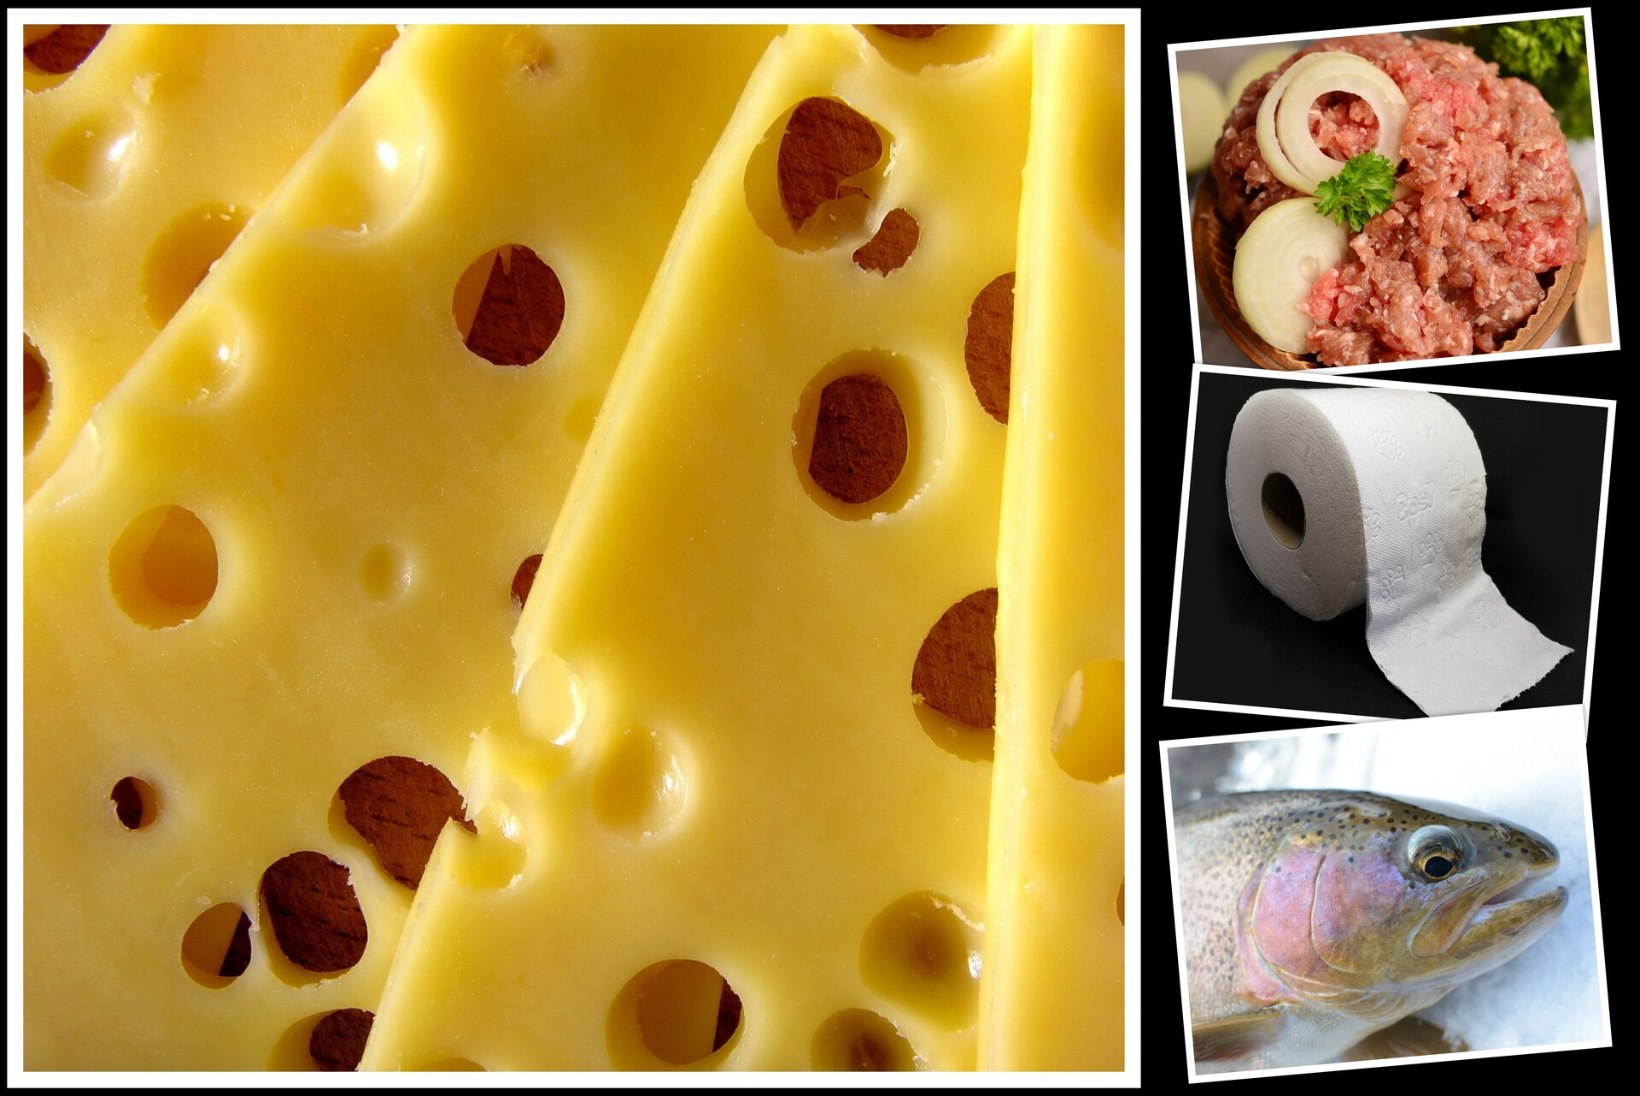 SÄÄSTUJUHT: vaata poode, kus nii kilo juustu kui kilo vikerforelli maksab vähem kui seitse eurot ja kus saab soodsalt kempsupaberit